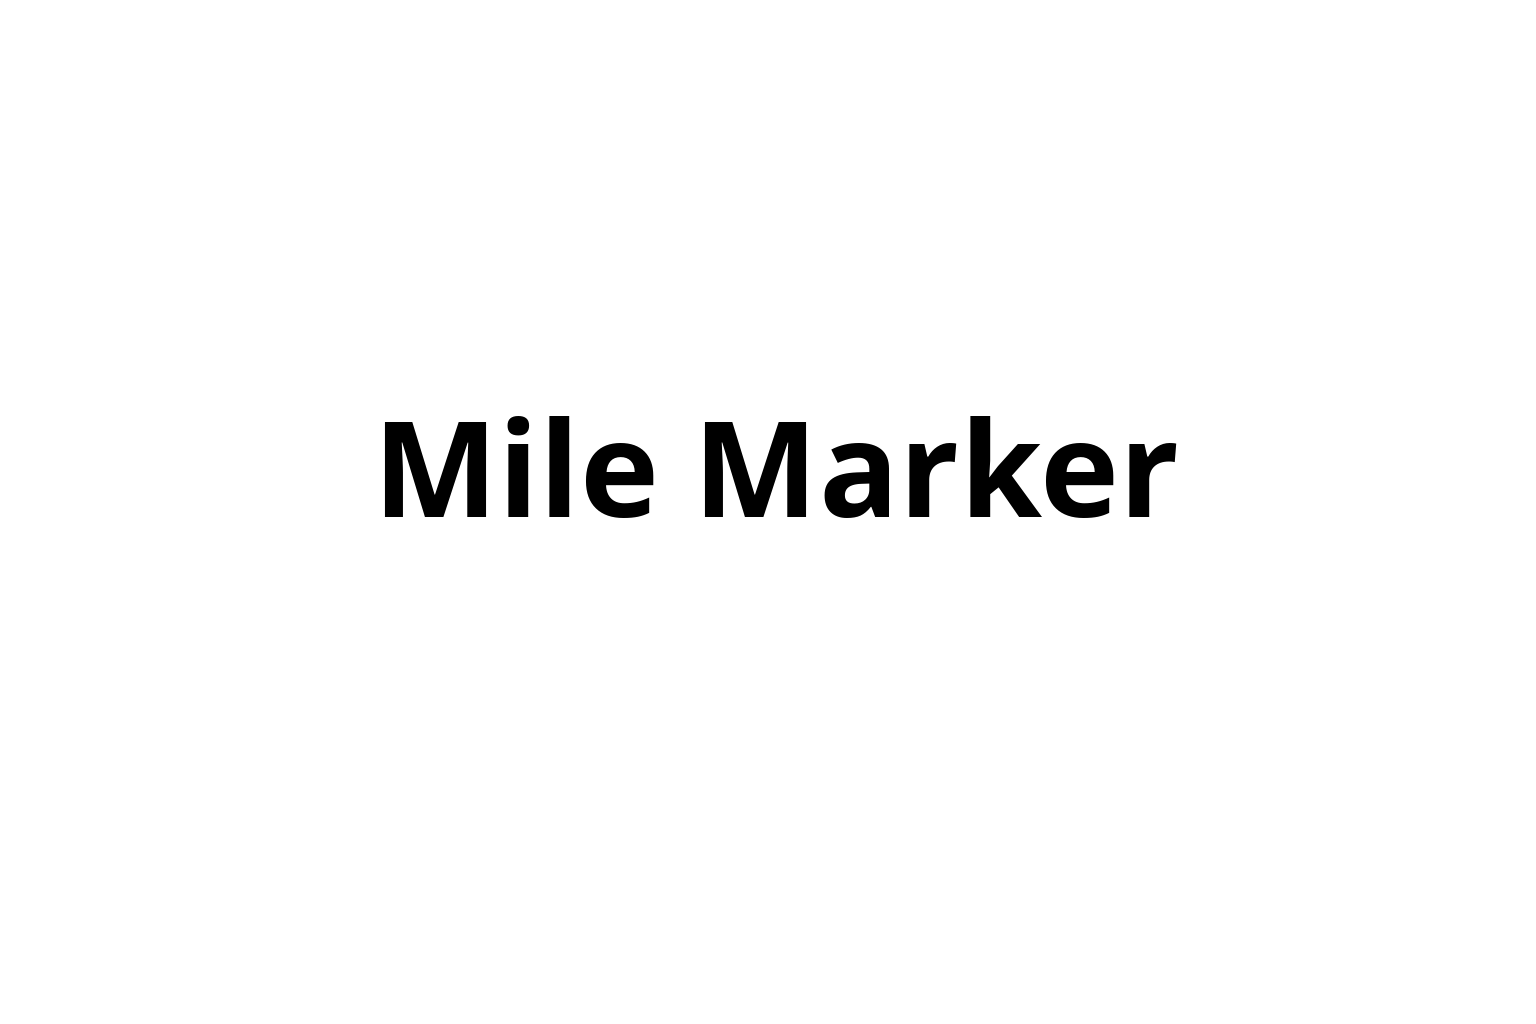 Mile Marker